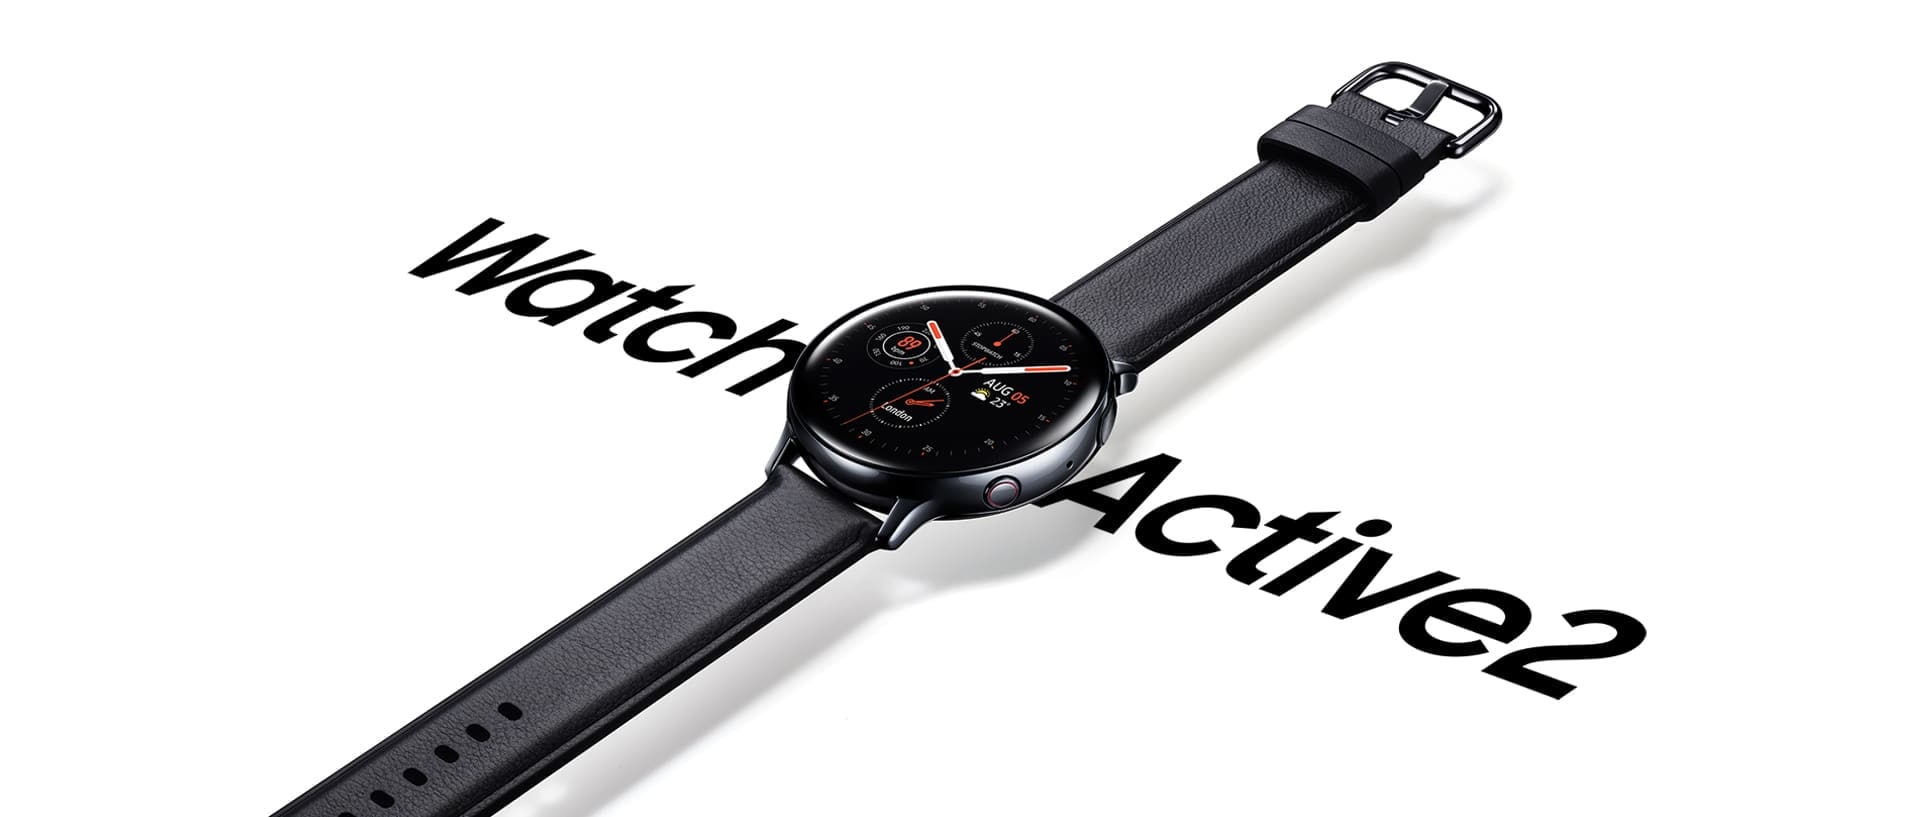 Часы Galaxy Watch Active2 из нержавеющей стали черного цвета с черным кожаным ремешком, который нависает над надписью «Watch Active 2», написанной крупным шрифтом ниже.